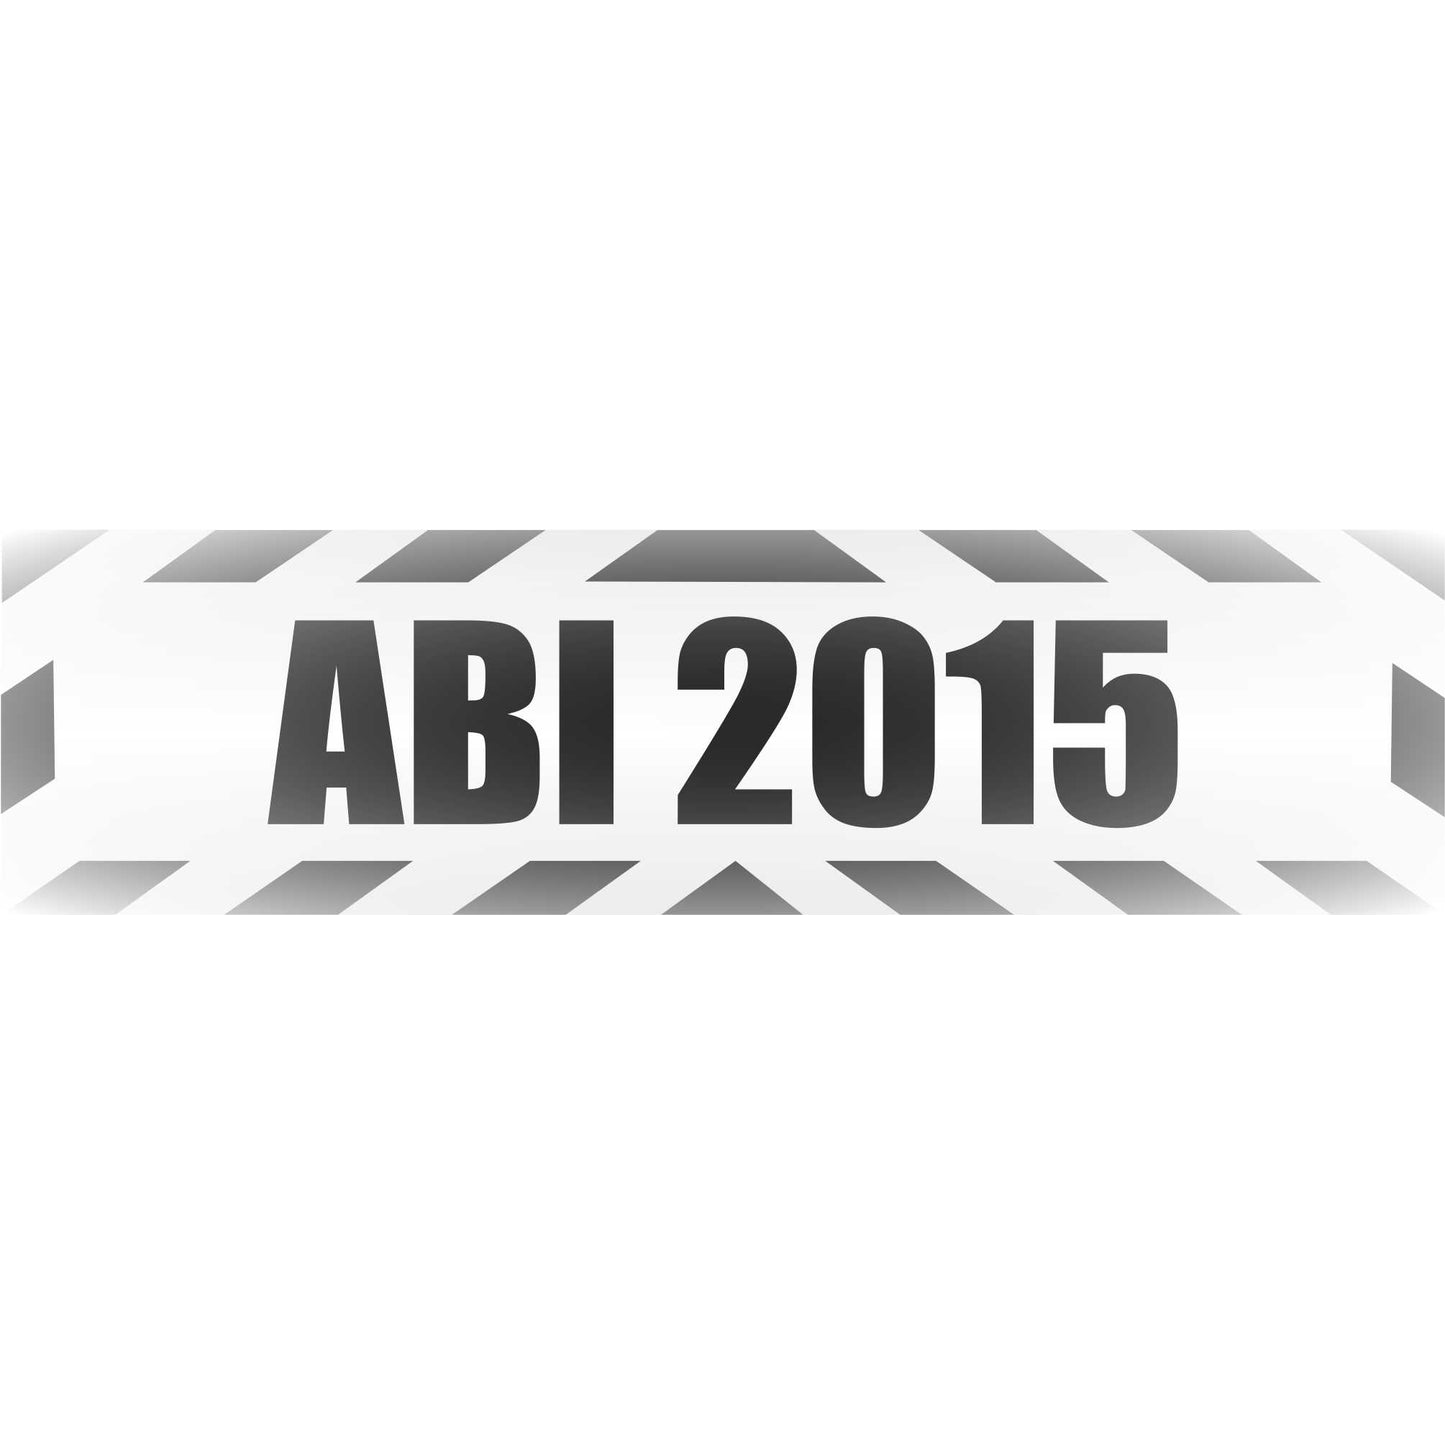 Magnetschild - Abi 2015 - Magnetfolie für Auto - LKW - Truck - Baustelle - Firma